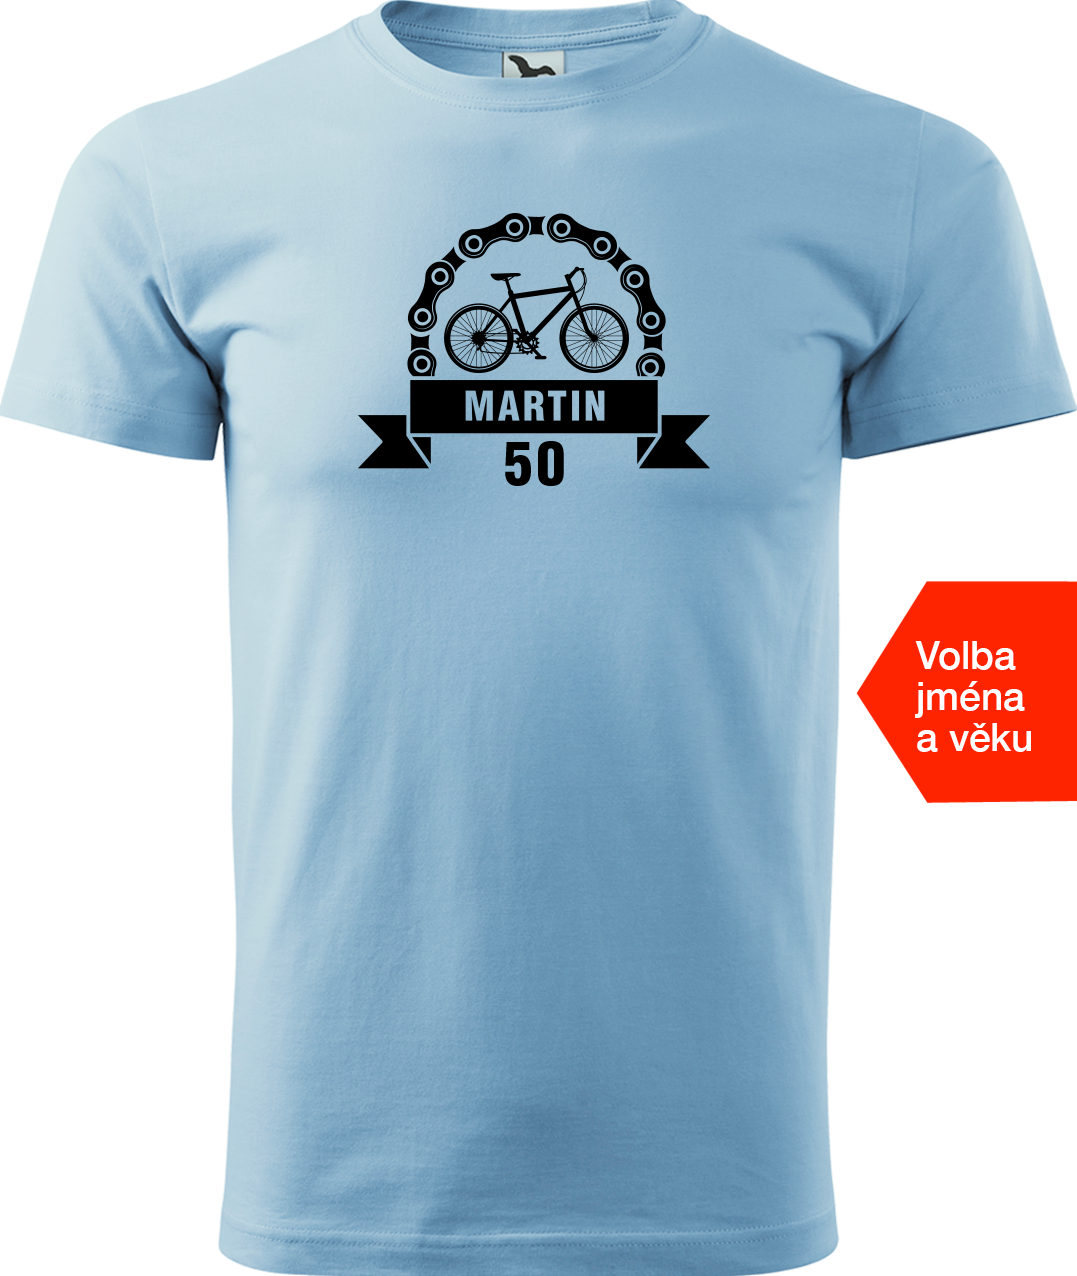 Pánské tričko pro cyklistu se jménem a věkem - Blahopřání Velikost: M, Barva: Nebesky modrá (15)